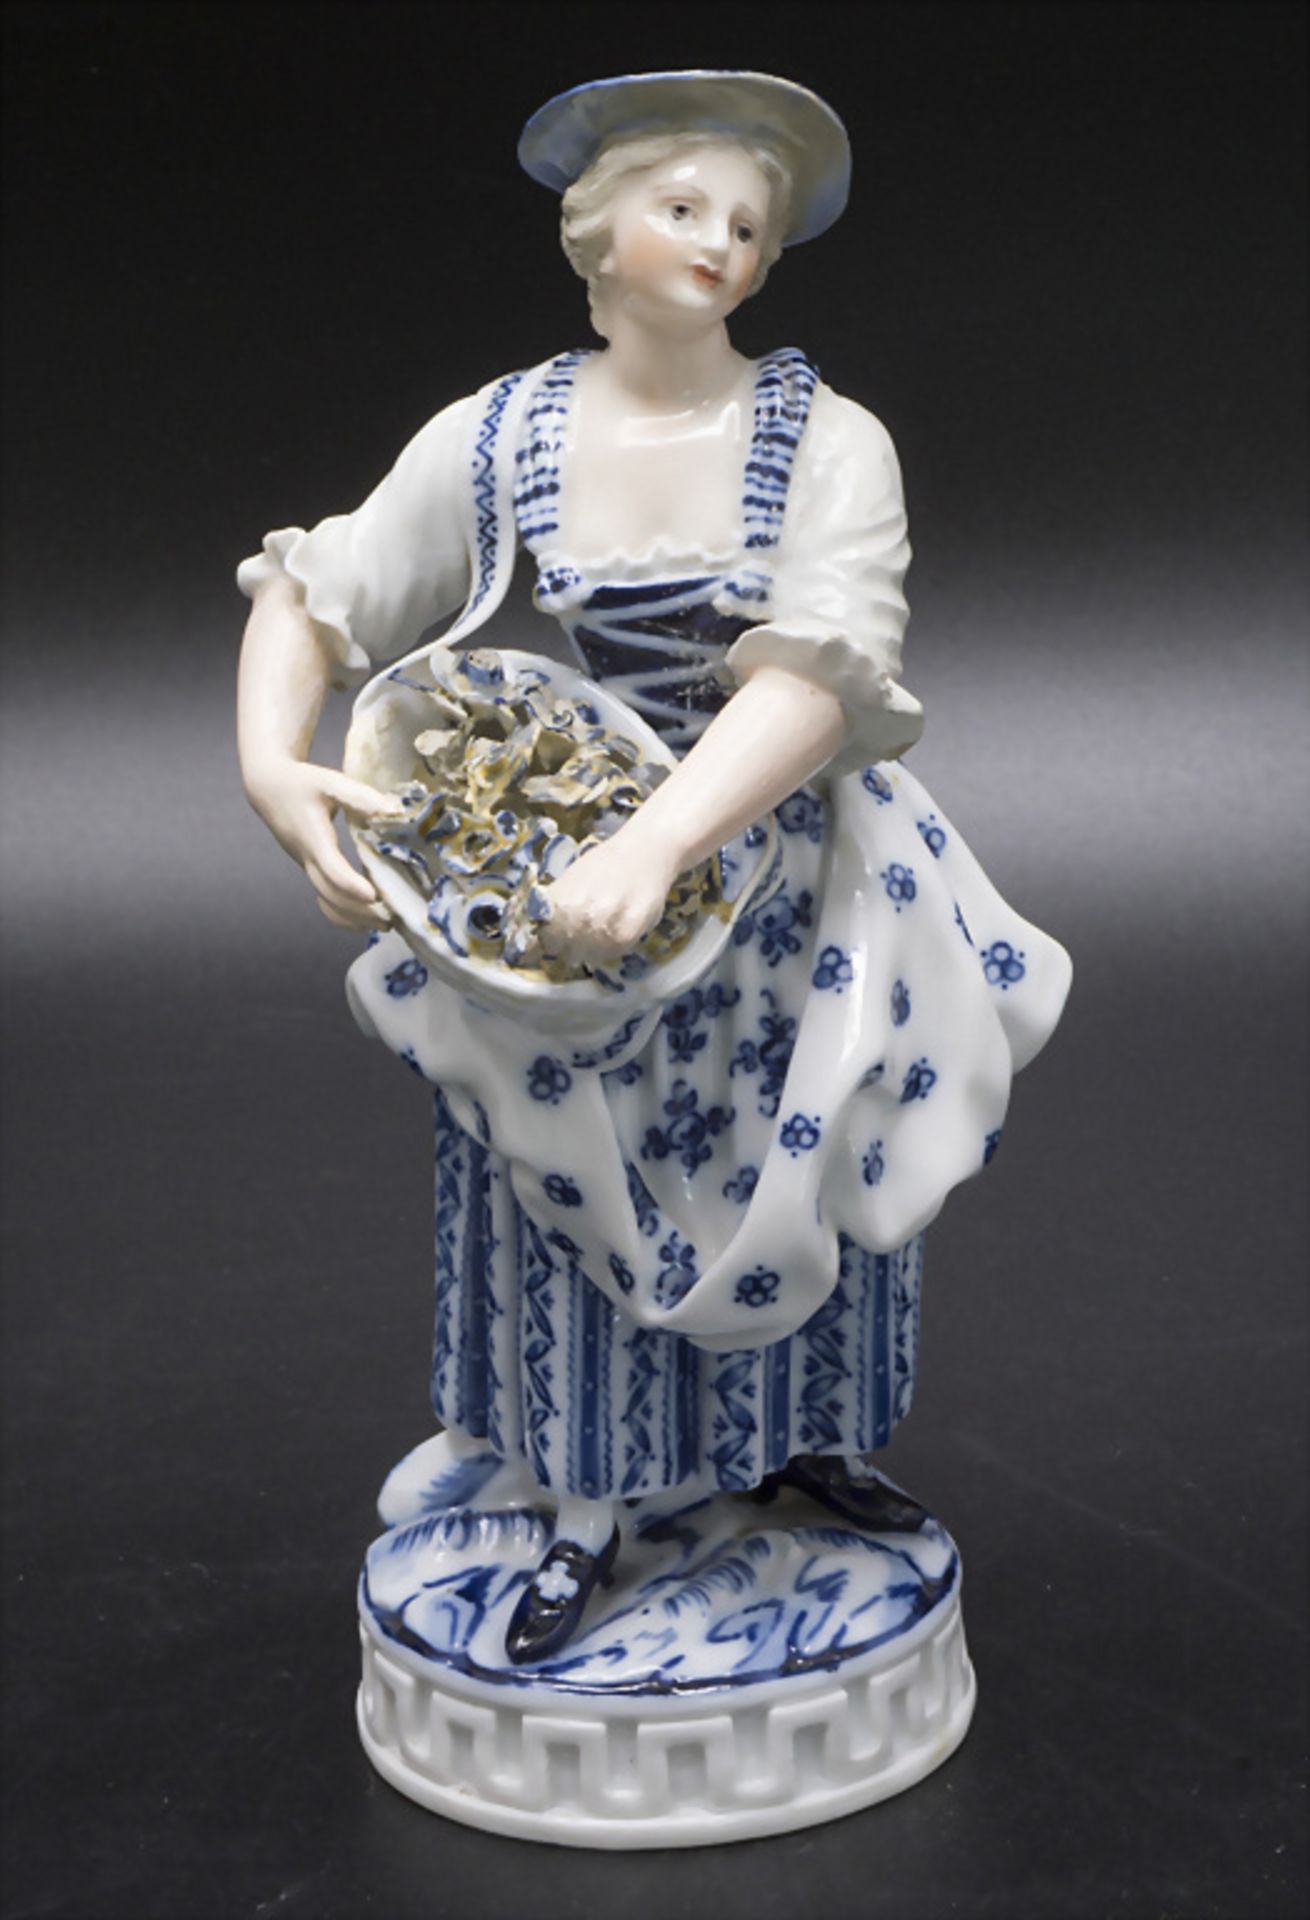 Dame mit Blumenkorb / A gardener lady with flower basket, Michel Victor Acier, Meissen, um 1880